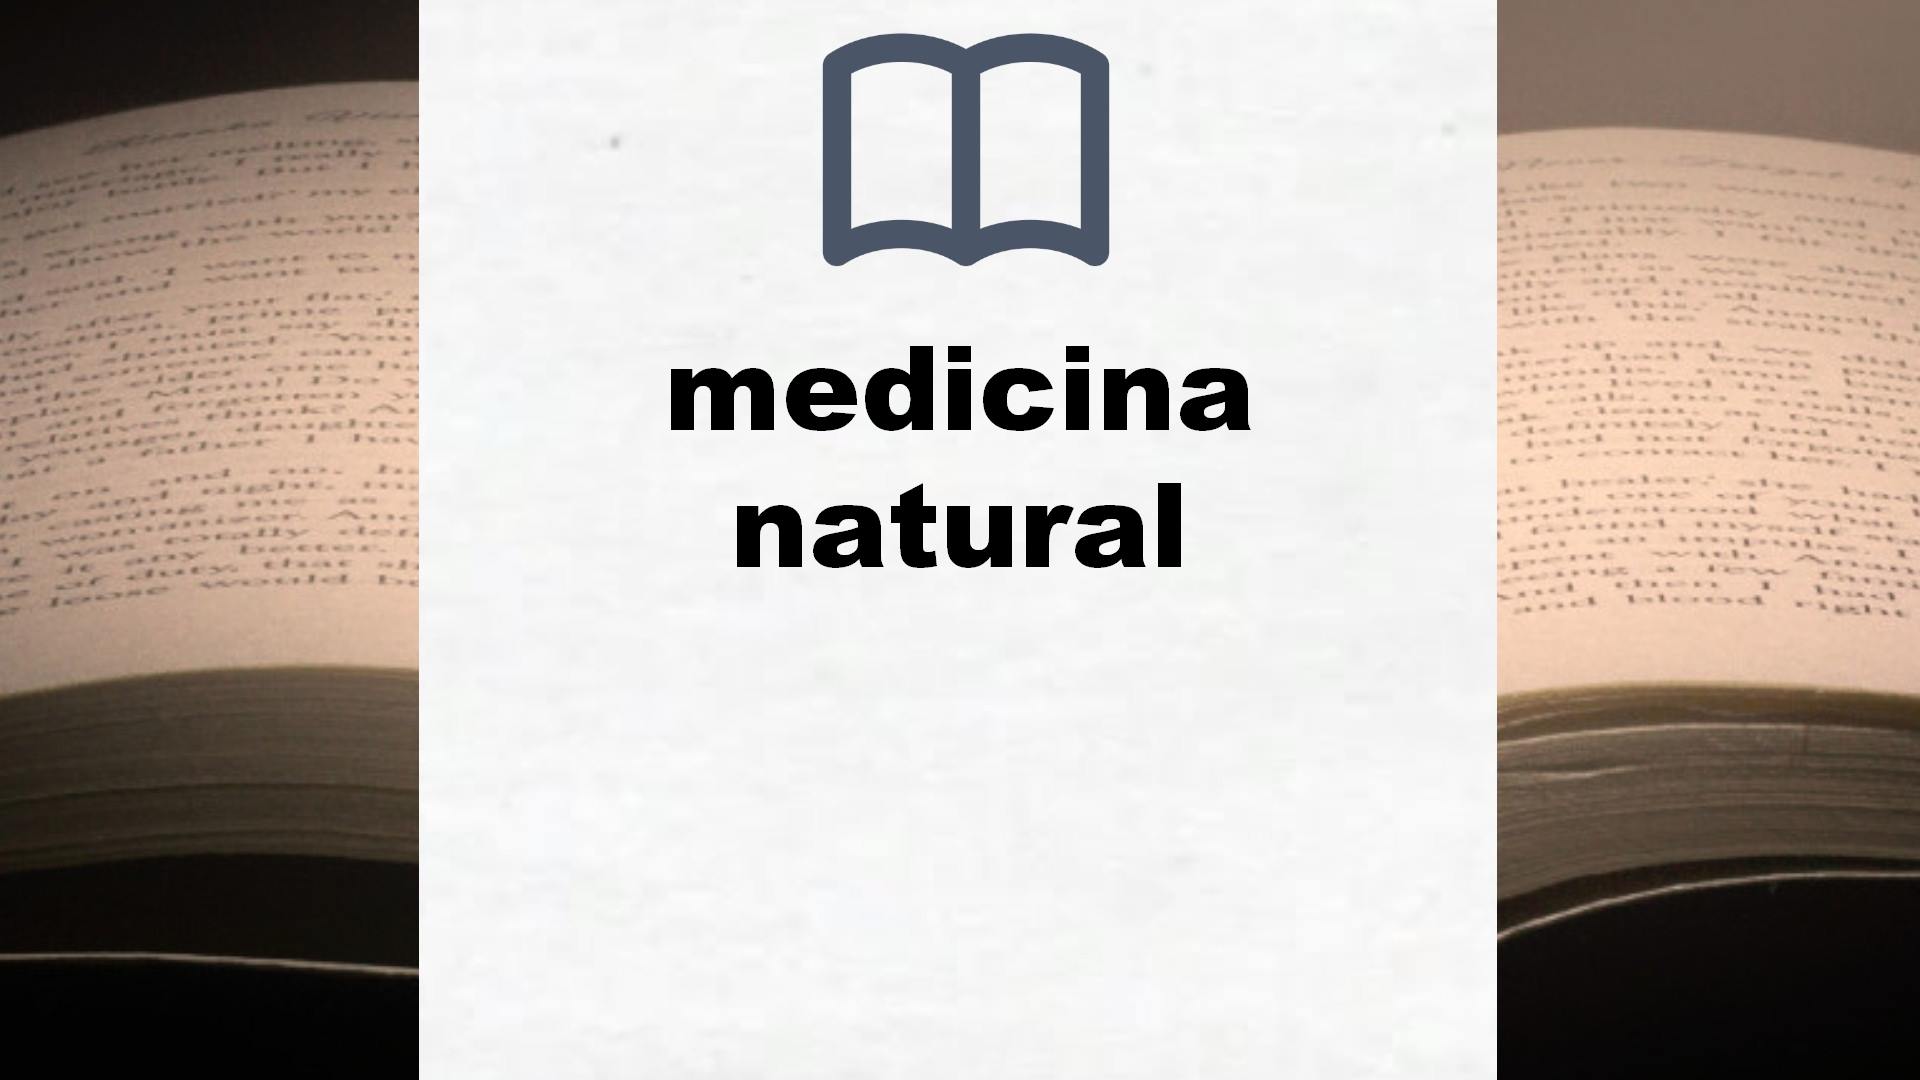 Libros sobre medicina natural